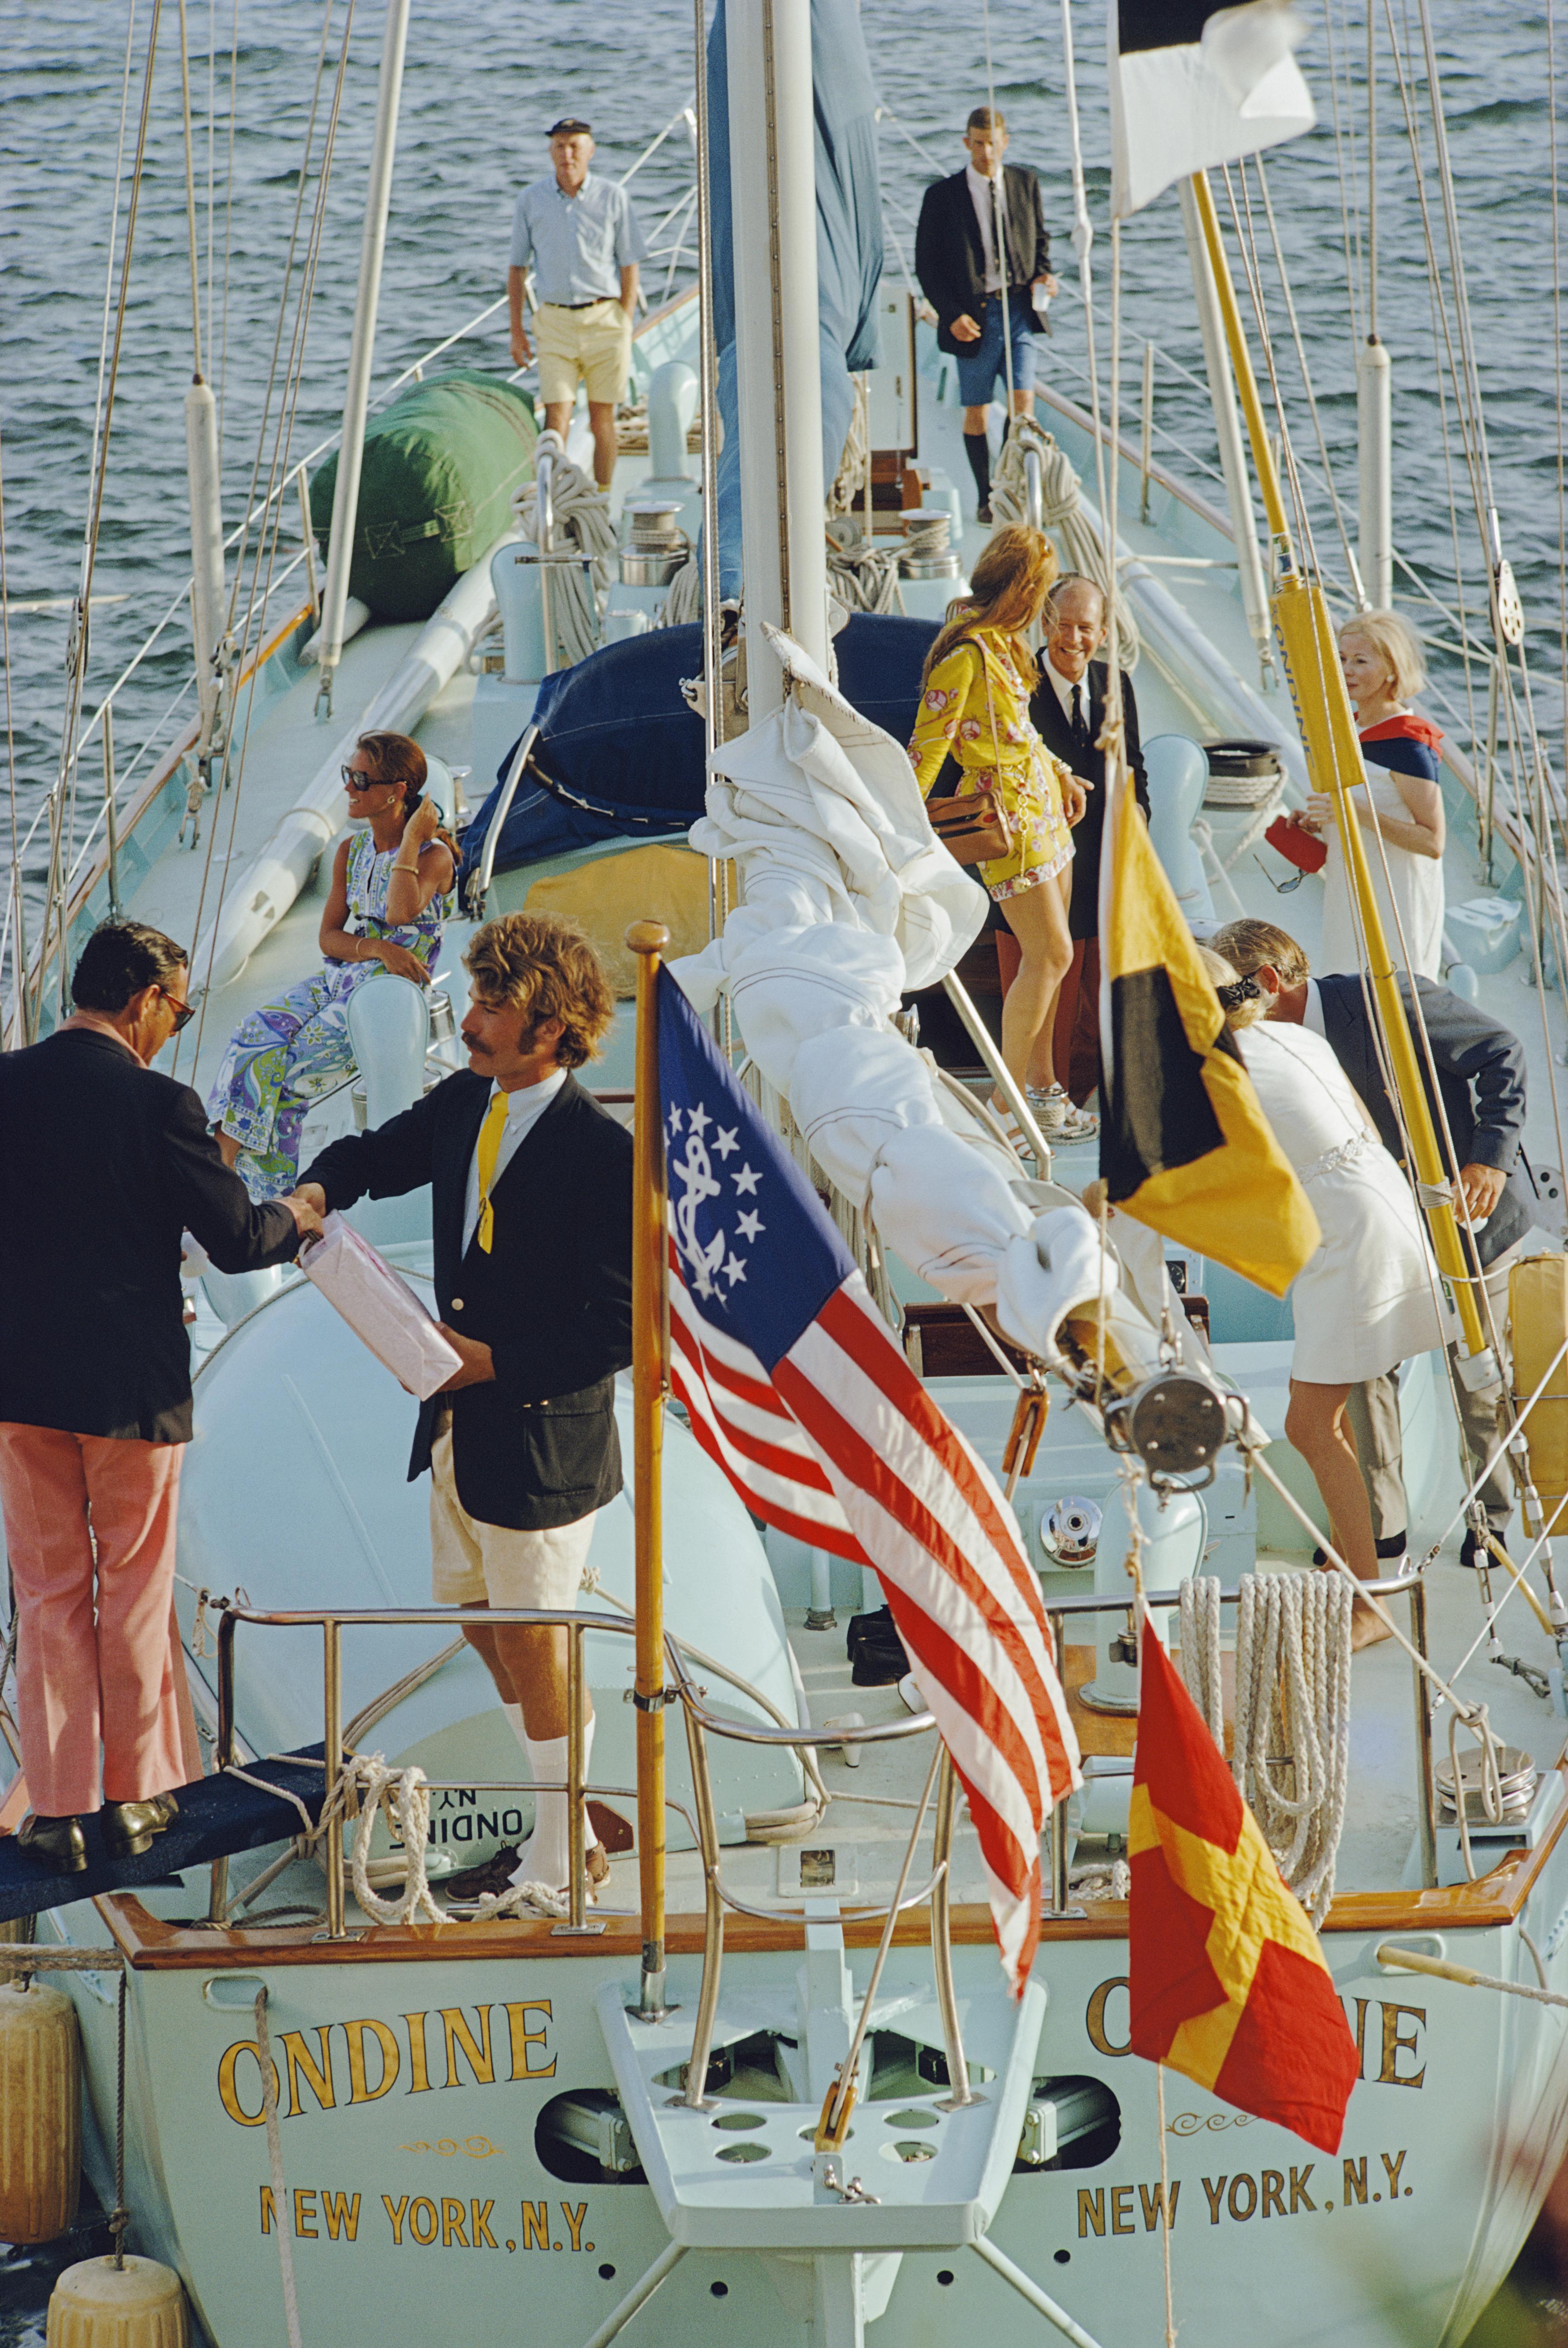 Portrait Photograph Slim Aarons - Party In Bermuda, édition de la succession, (1970 sur le yacht Ondine en jaune et rouge)